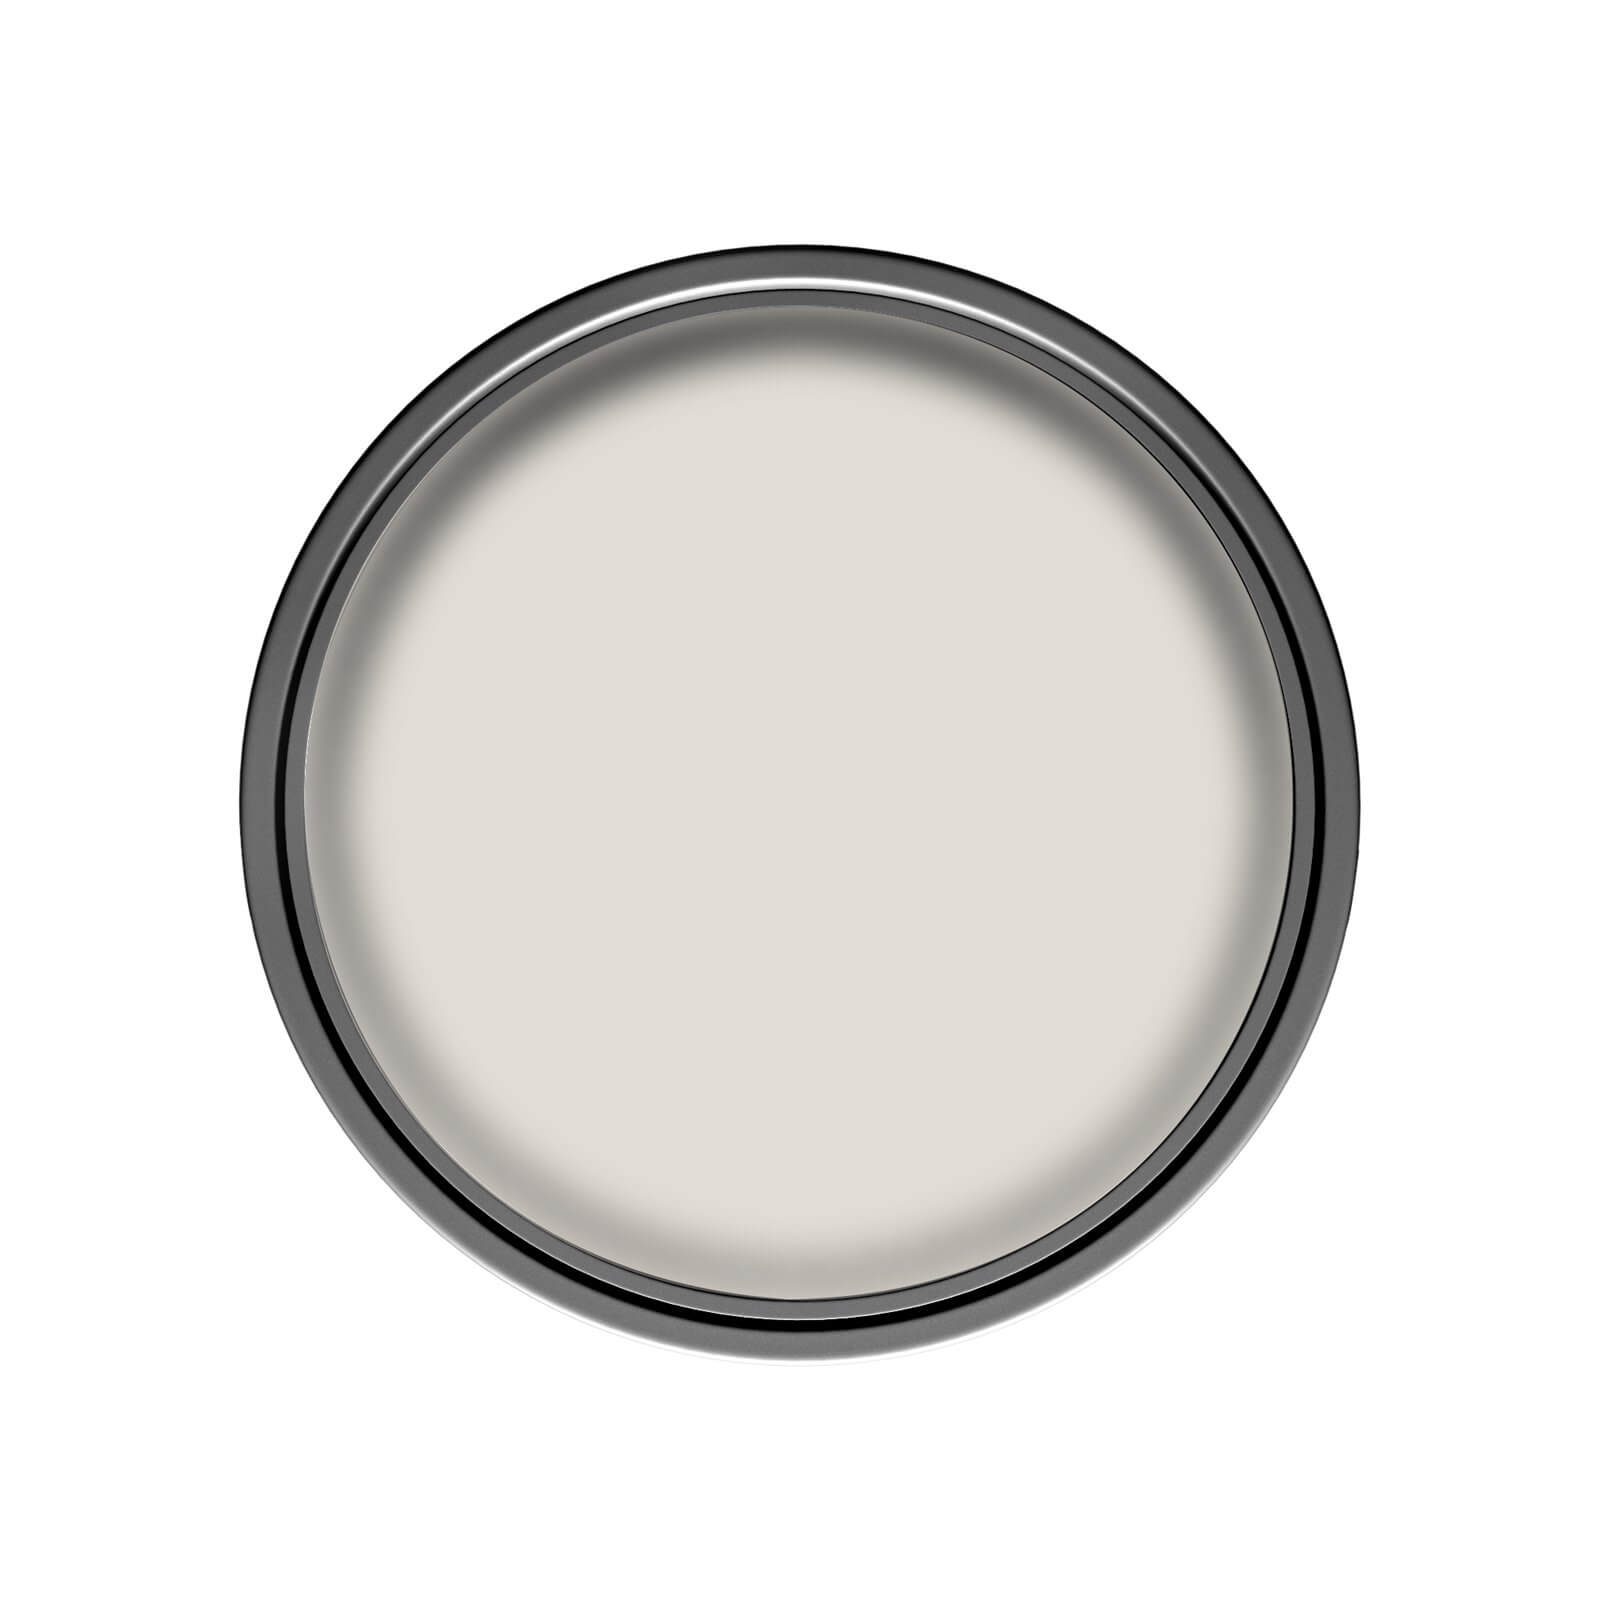 Dulux Natural Hints Silk Emulsion Paint Nutmeg White - 2.5L